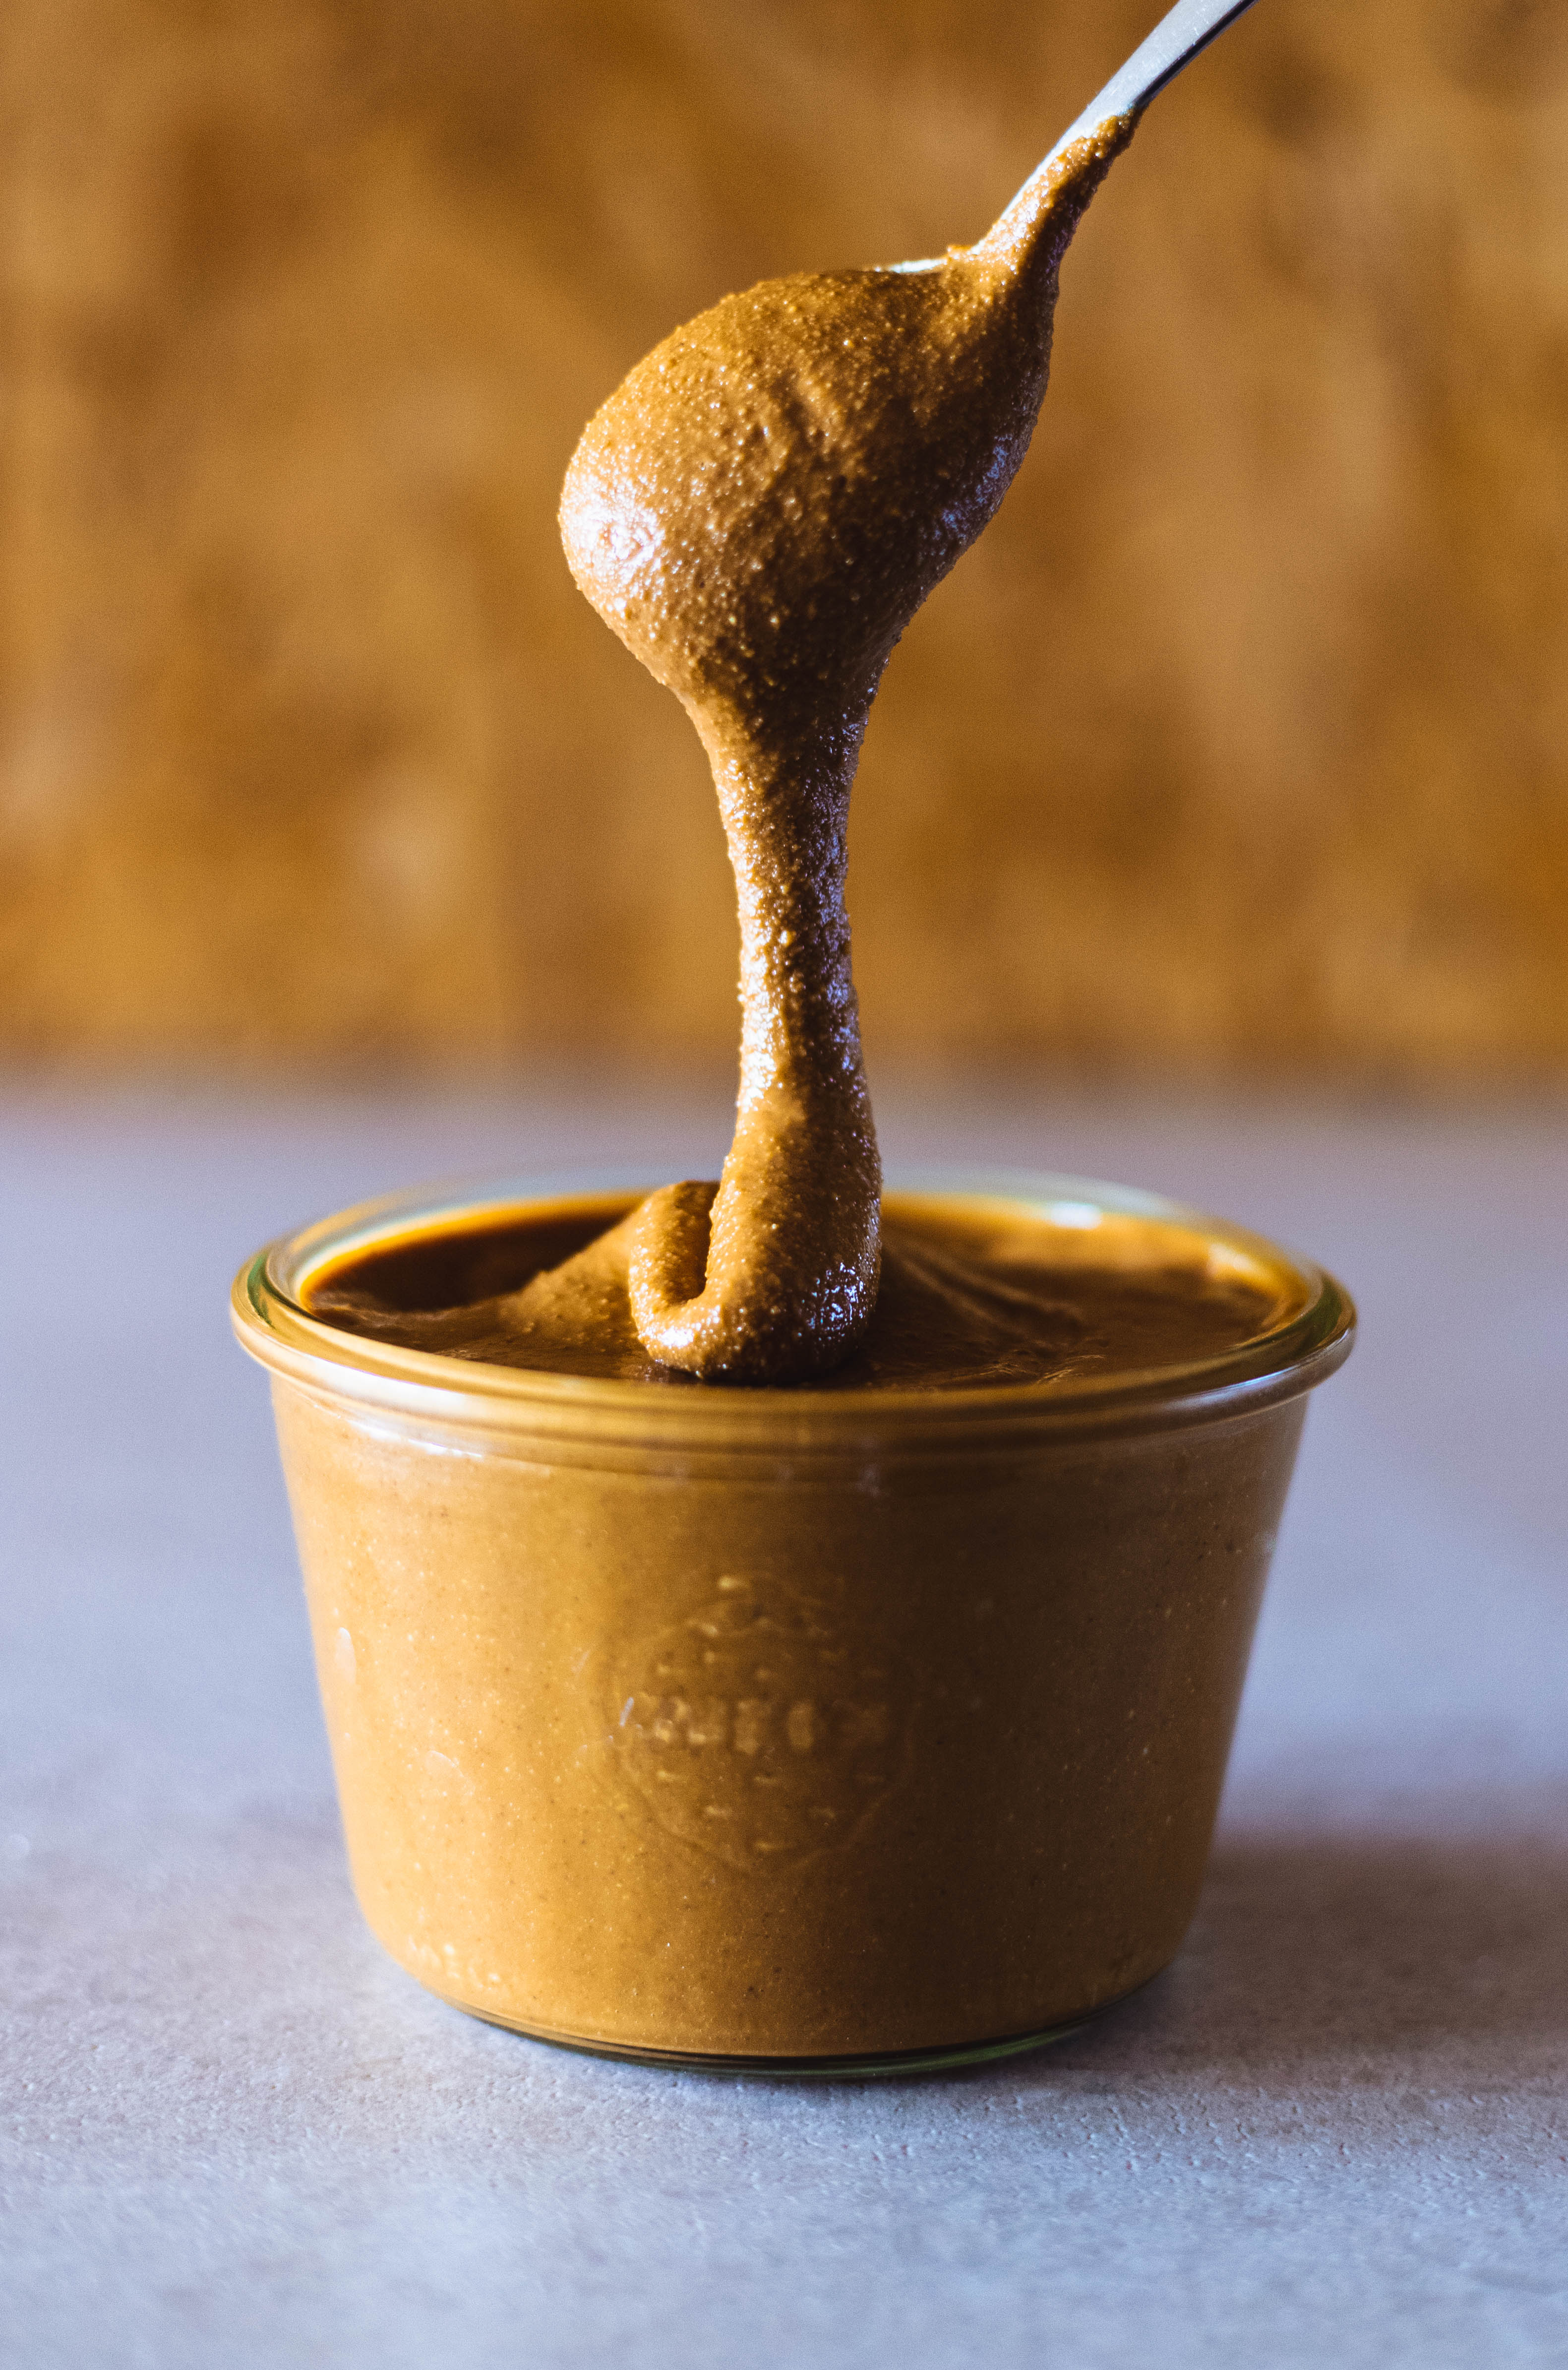 La sauce soja - 10 idées healthy pour remplacer le sel - Elle à Table